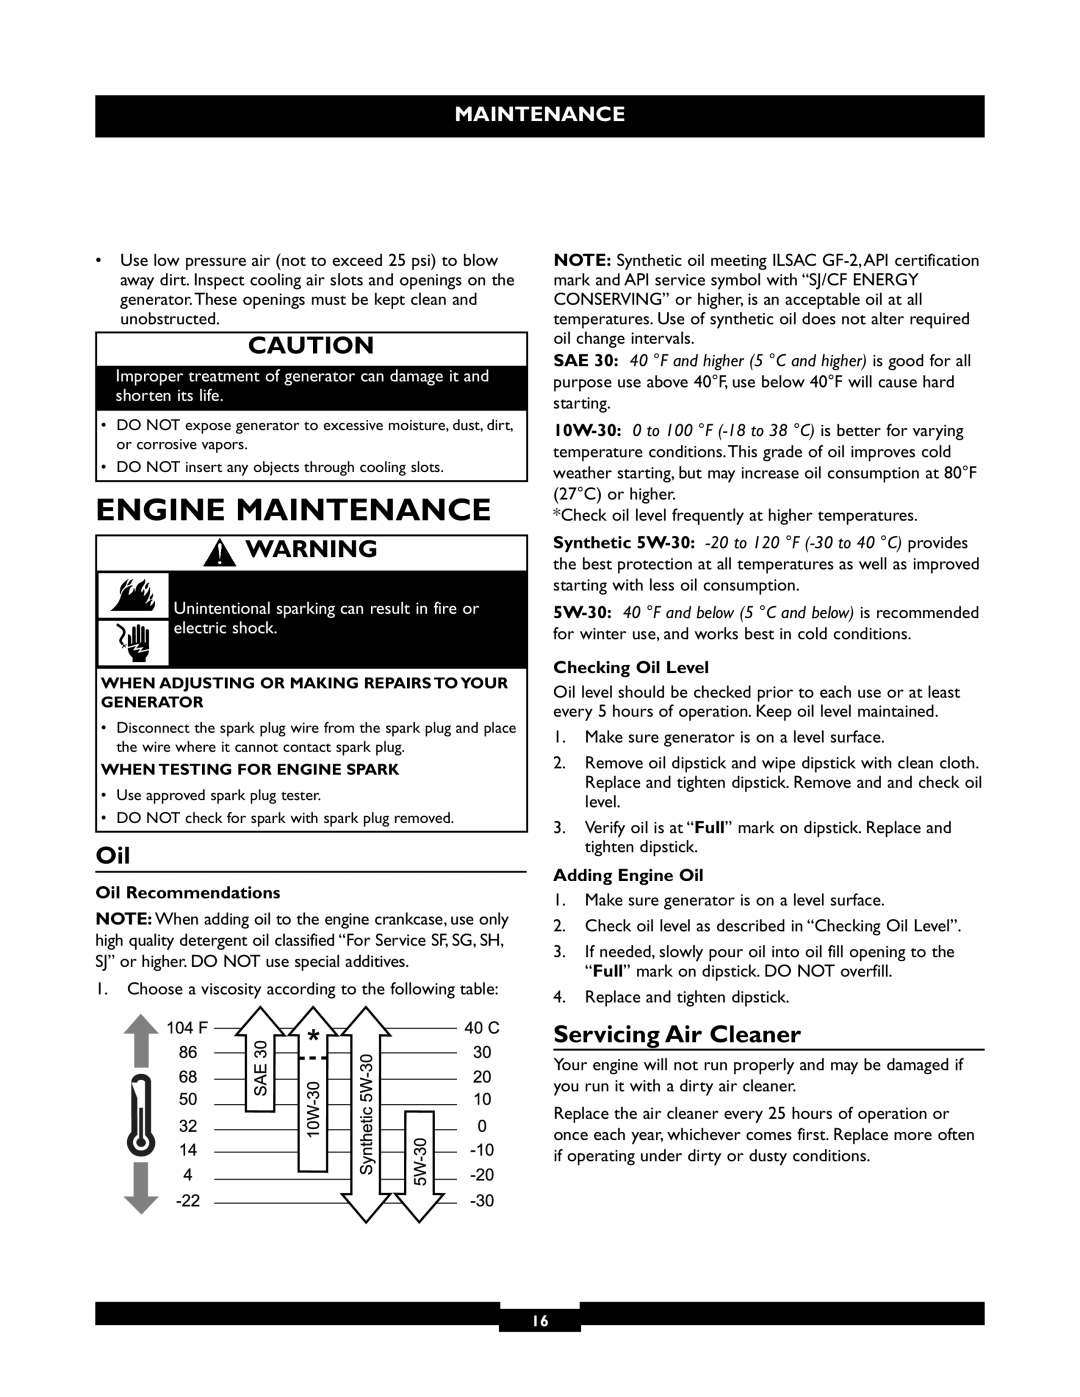 Briggs & Stratton 30236 manuel dutilisation Engine Maintenance, Servicing Air Cleaner 